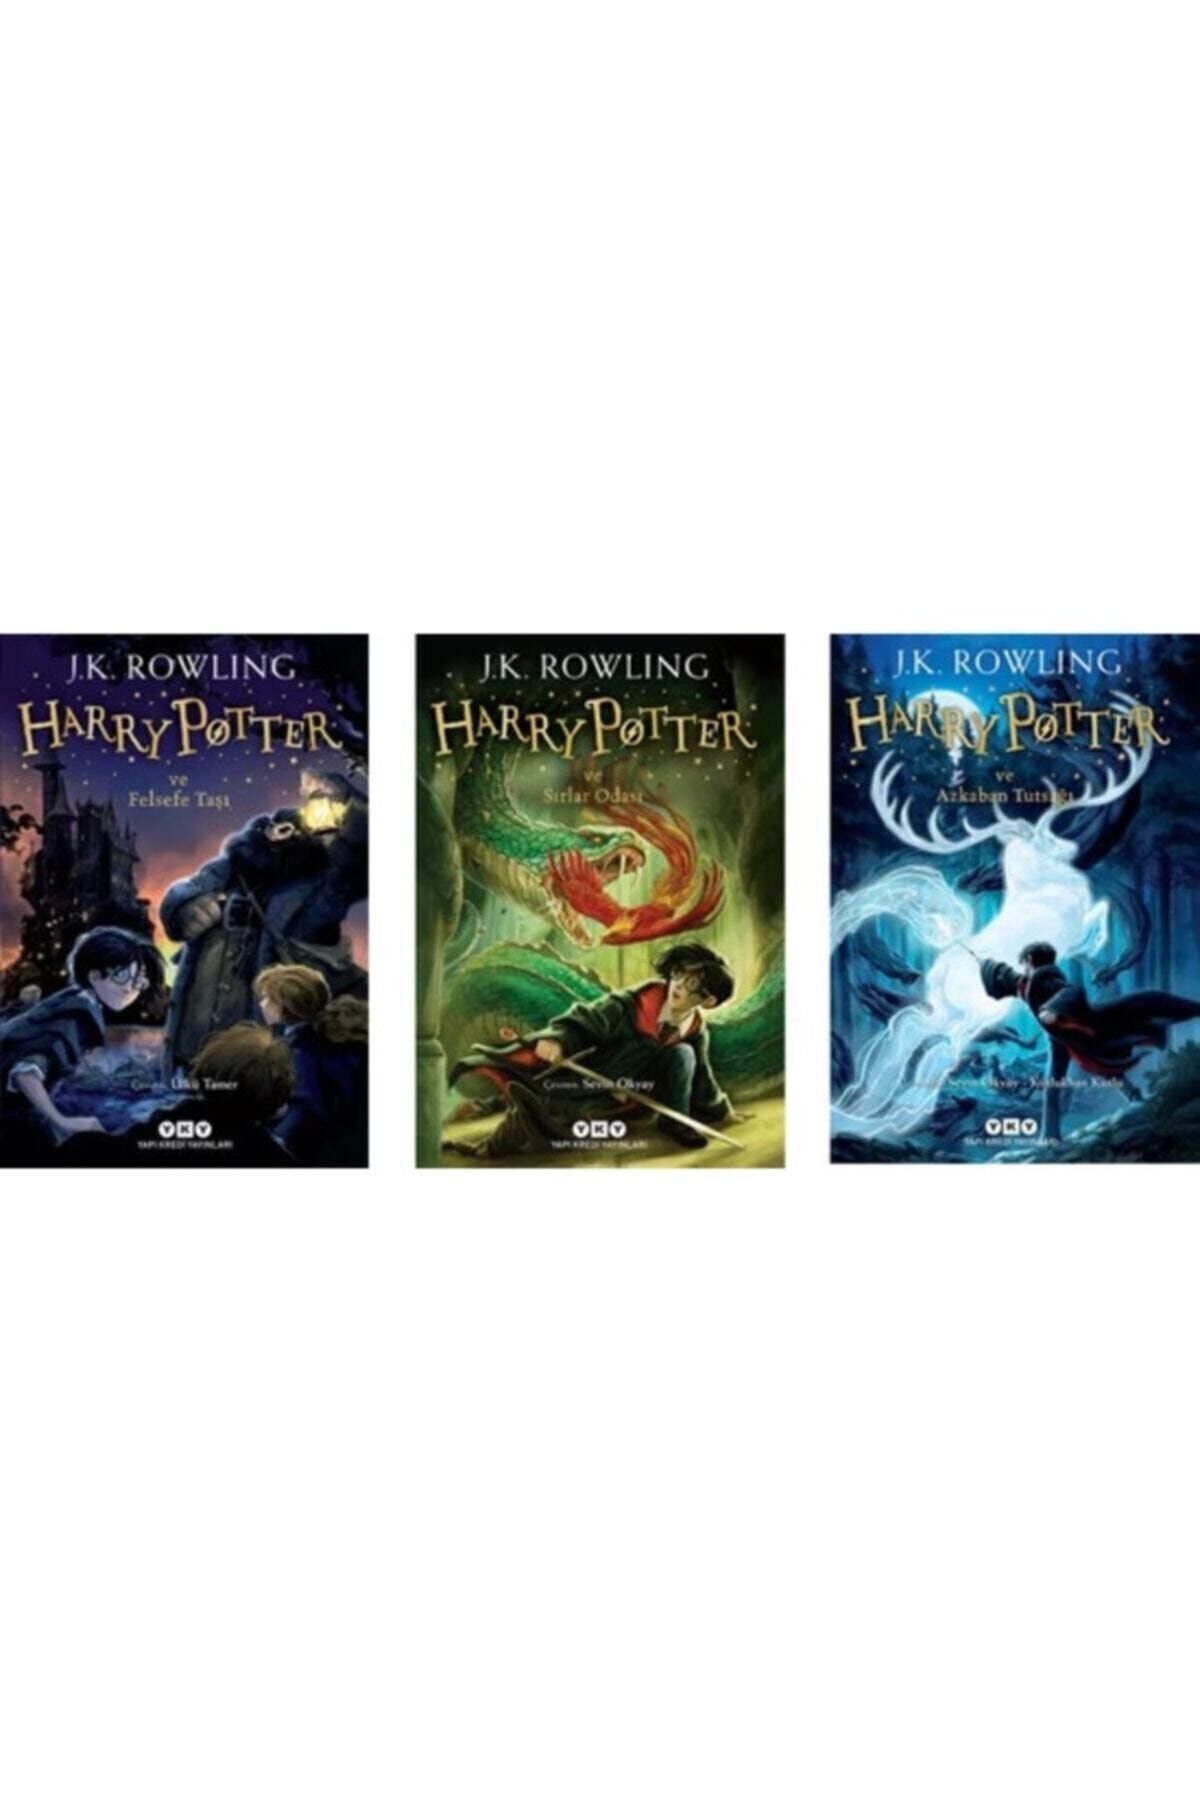 Yapı Kredi Yayınları Harry Potter Serisi 1. 2. 3. Kitaplar 3 Kitap Set - Felsefe Taşı - Sırlar Odası - Azkaban Tutsağı